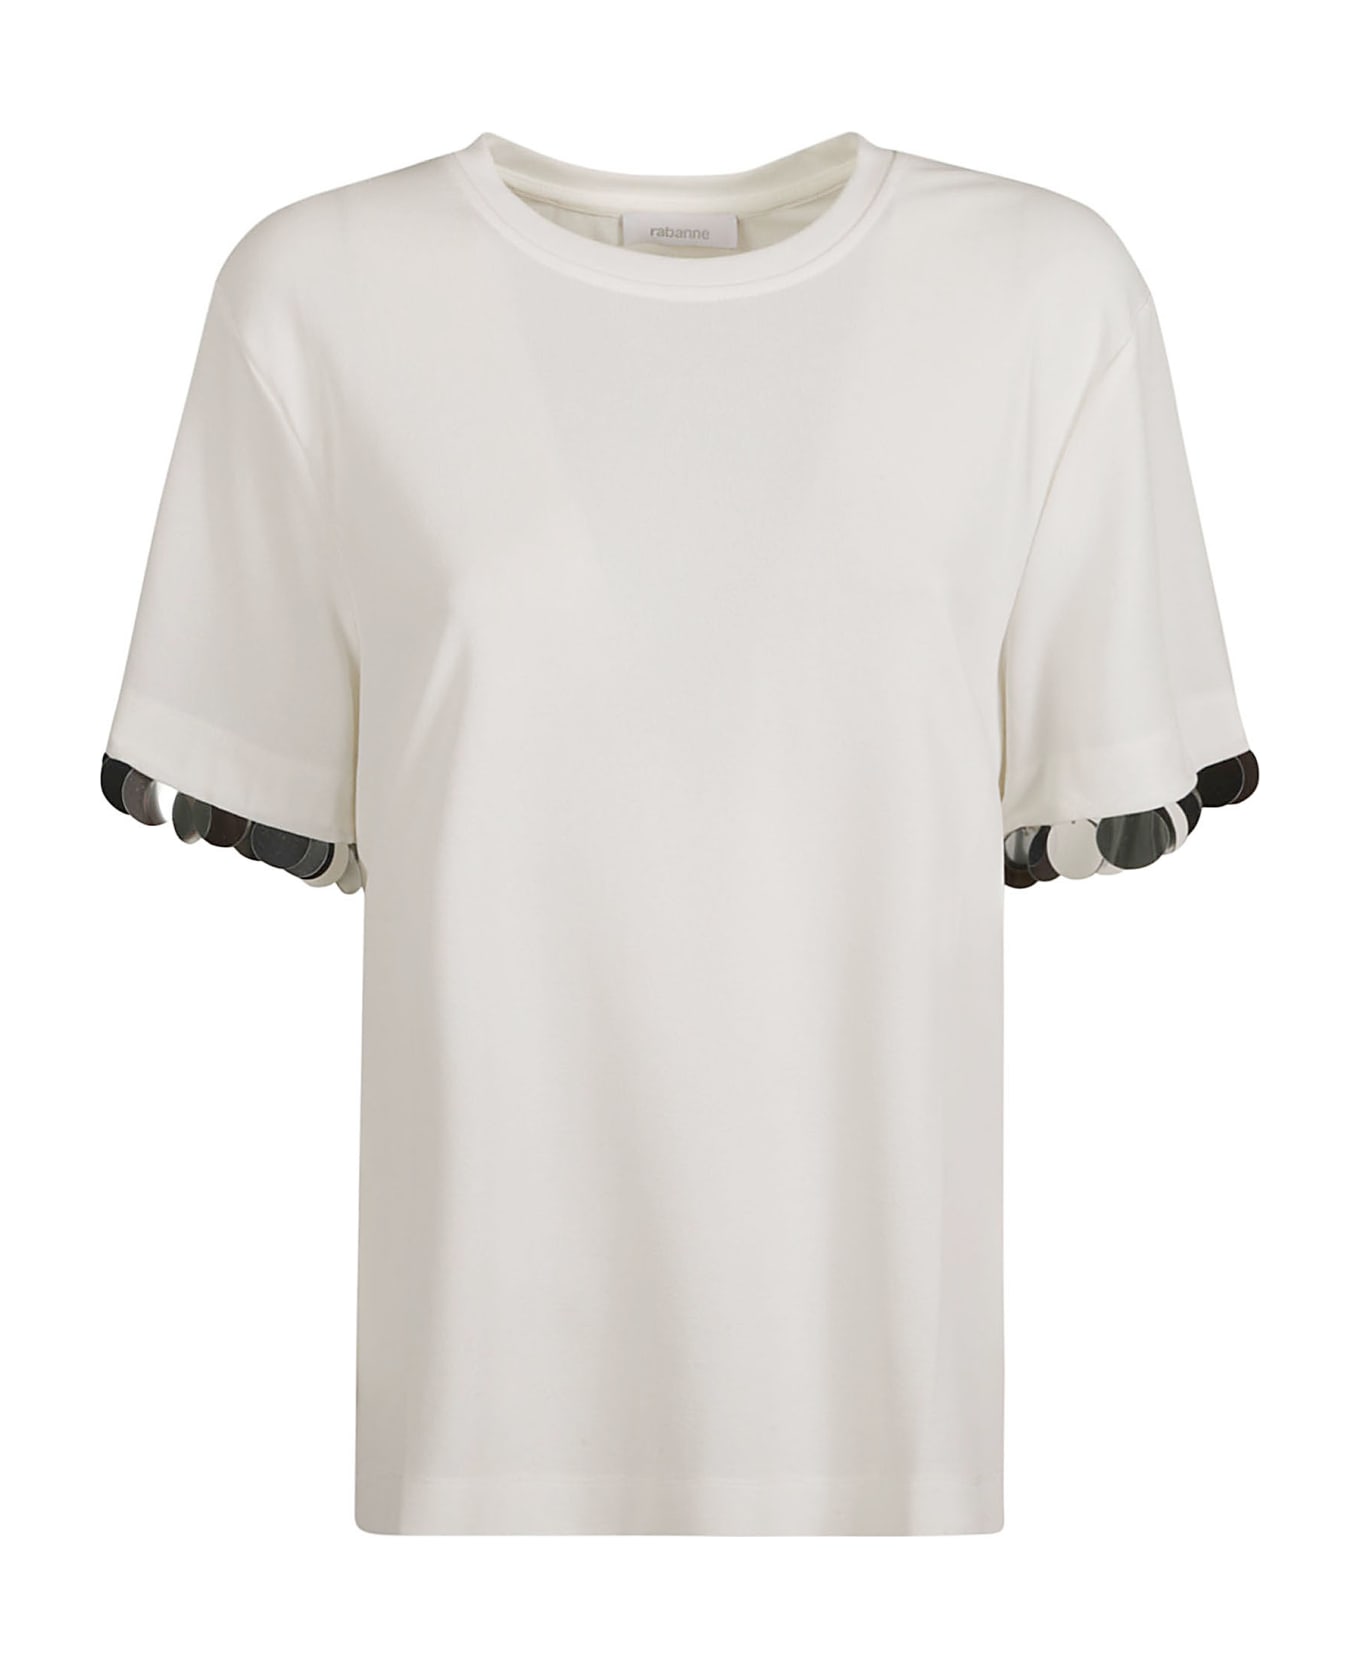 Paco Rabanne Round Neck T-shirt - Coconut Milk Tシャツ